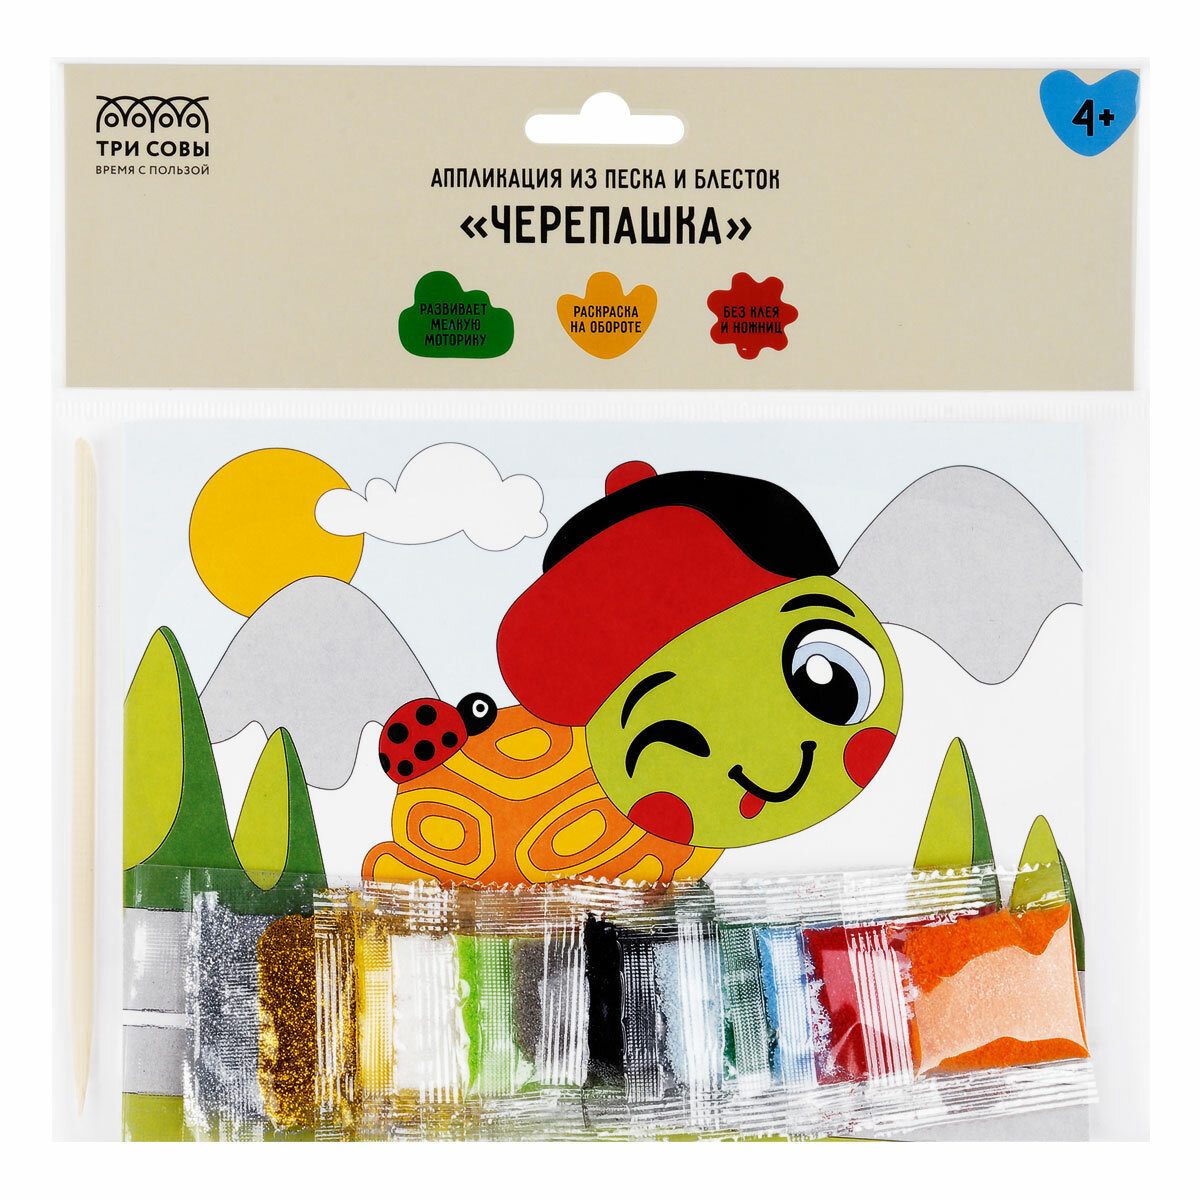 Аппликация из песка и блесток ТРИ совы "Черепашка", с раскраской, пакет с европодвесом (ФП_47828)